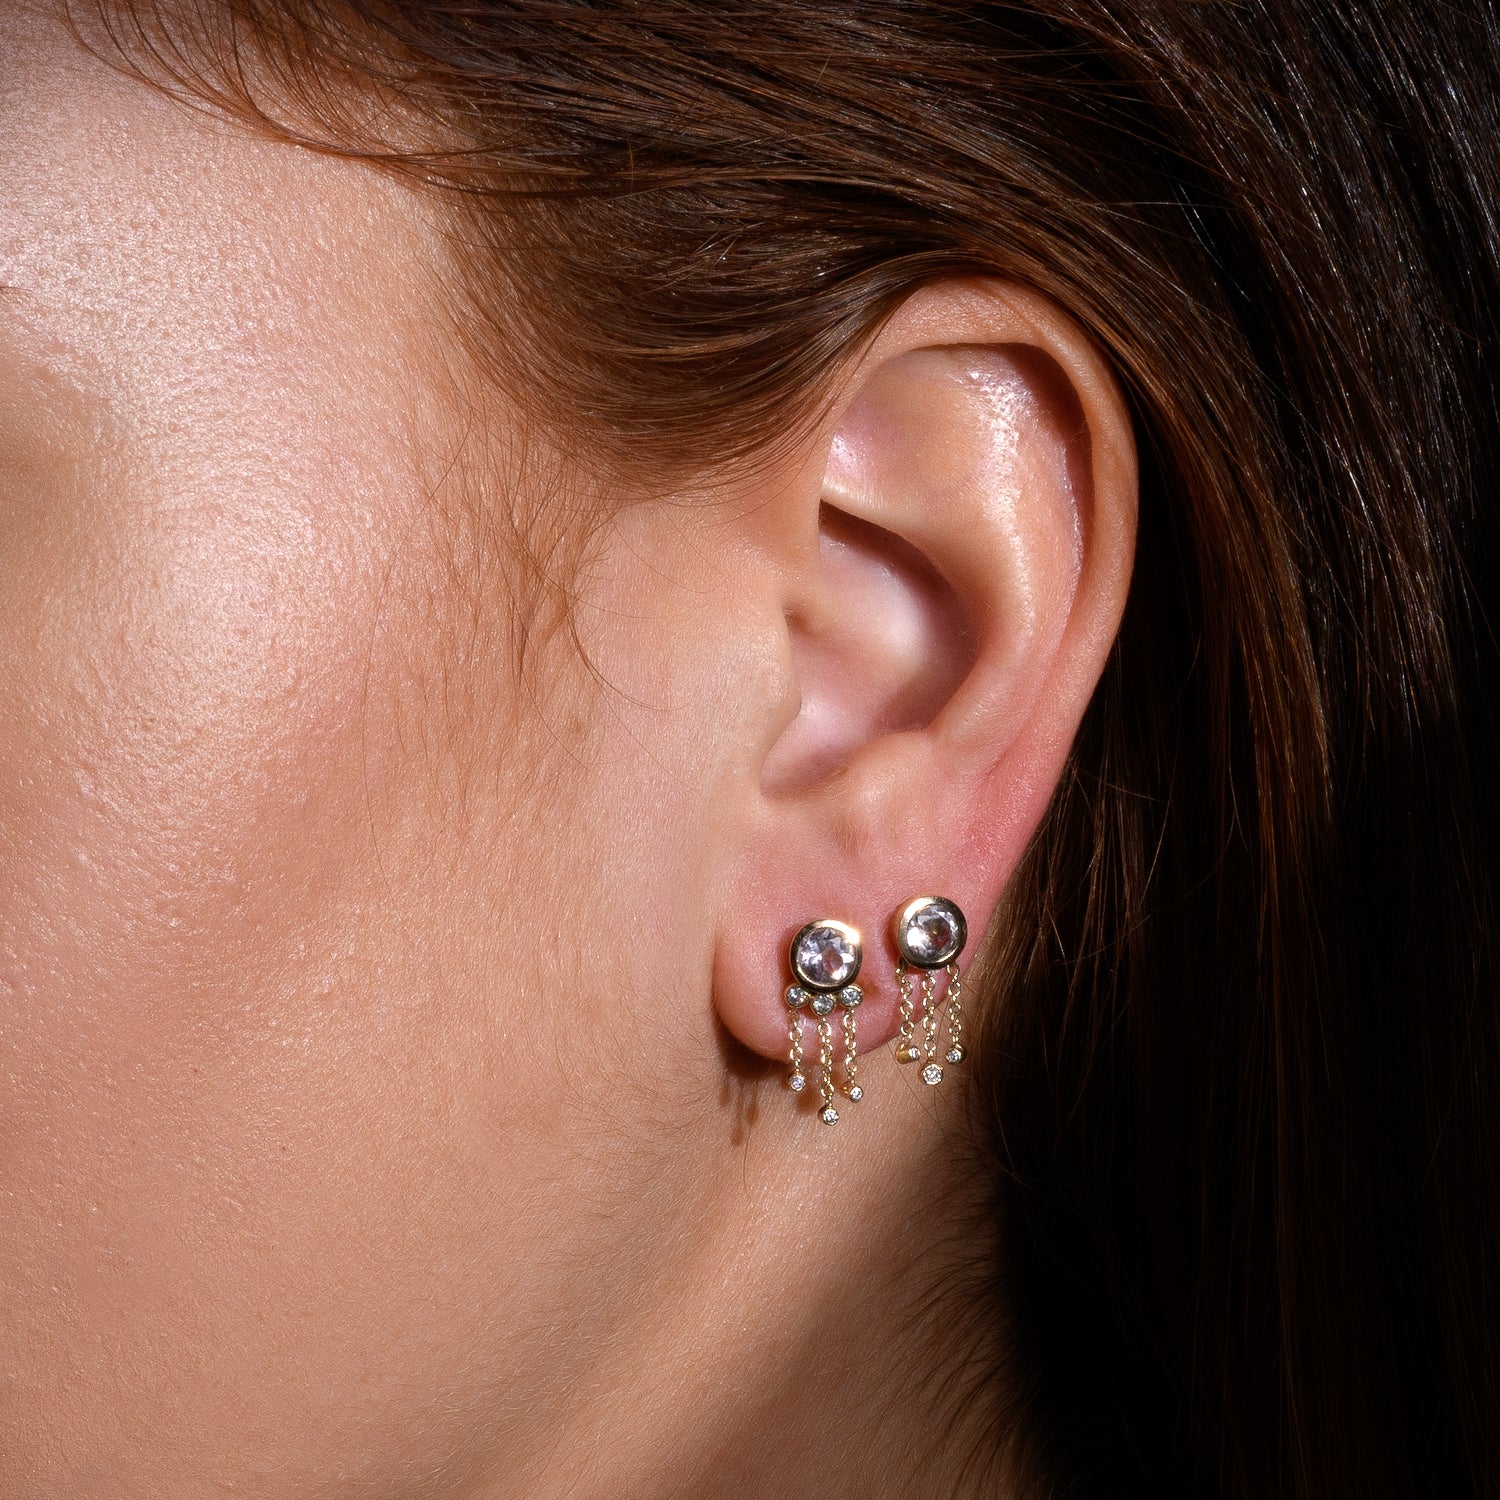 Bhagsu Earring &amp; Morganite  - one of a kind - Danielle Gerber Freedom Jewelry